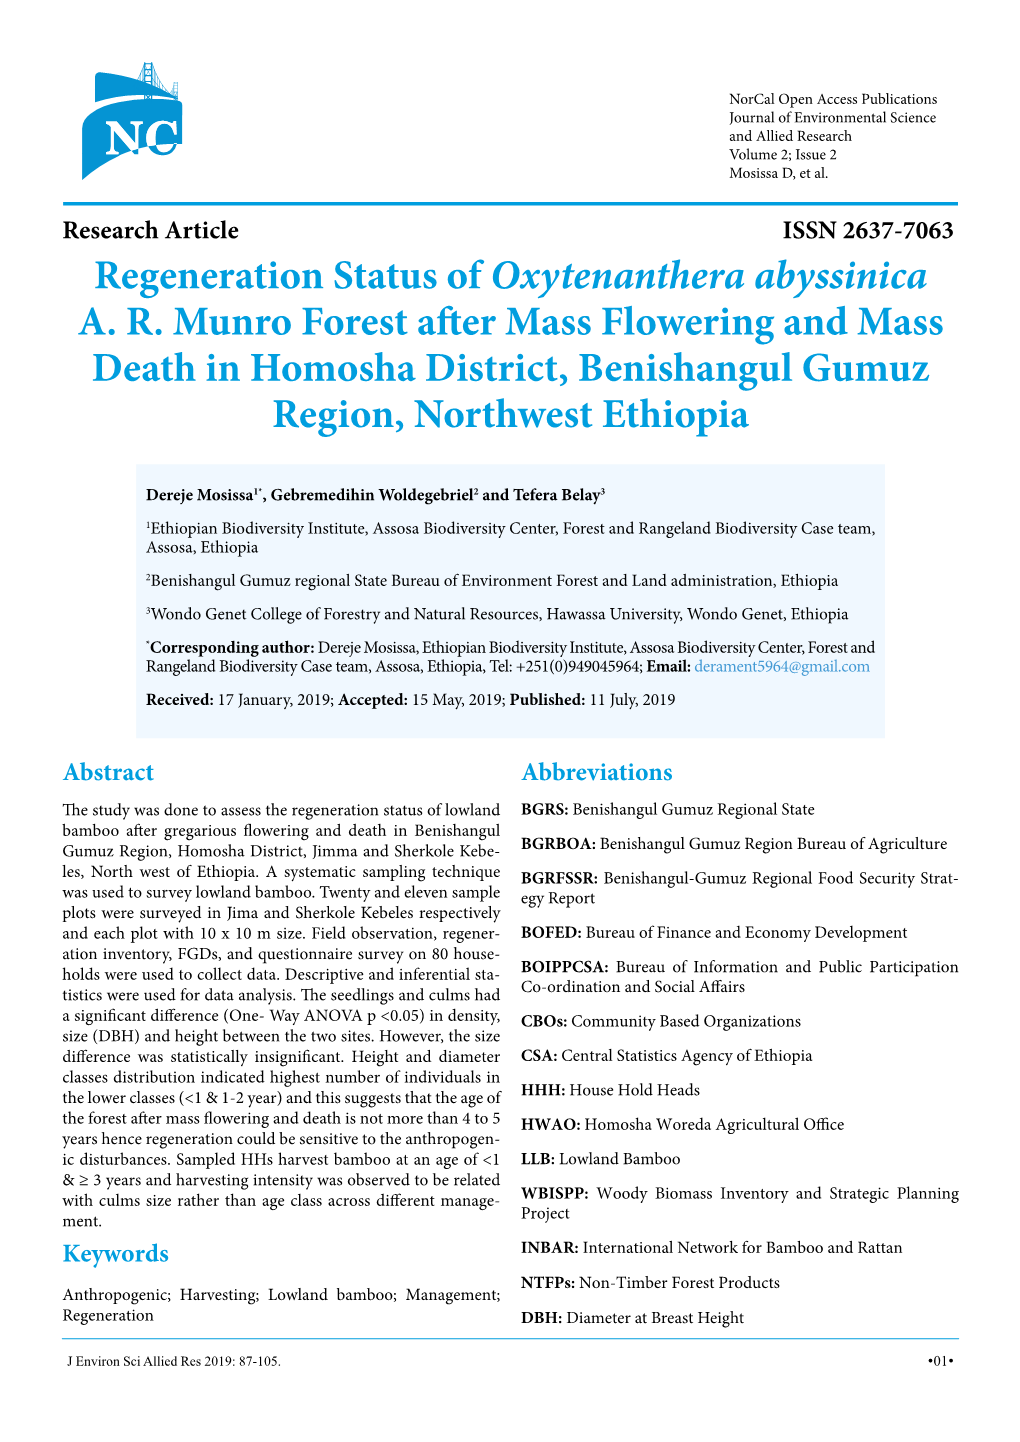 Research Article Regeneration Status of Oxytenanthera